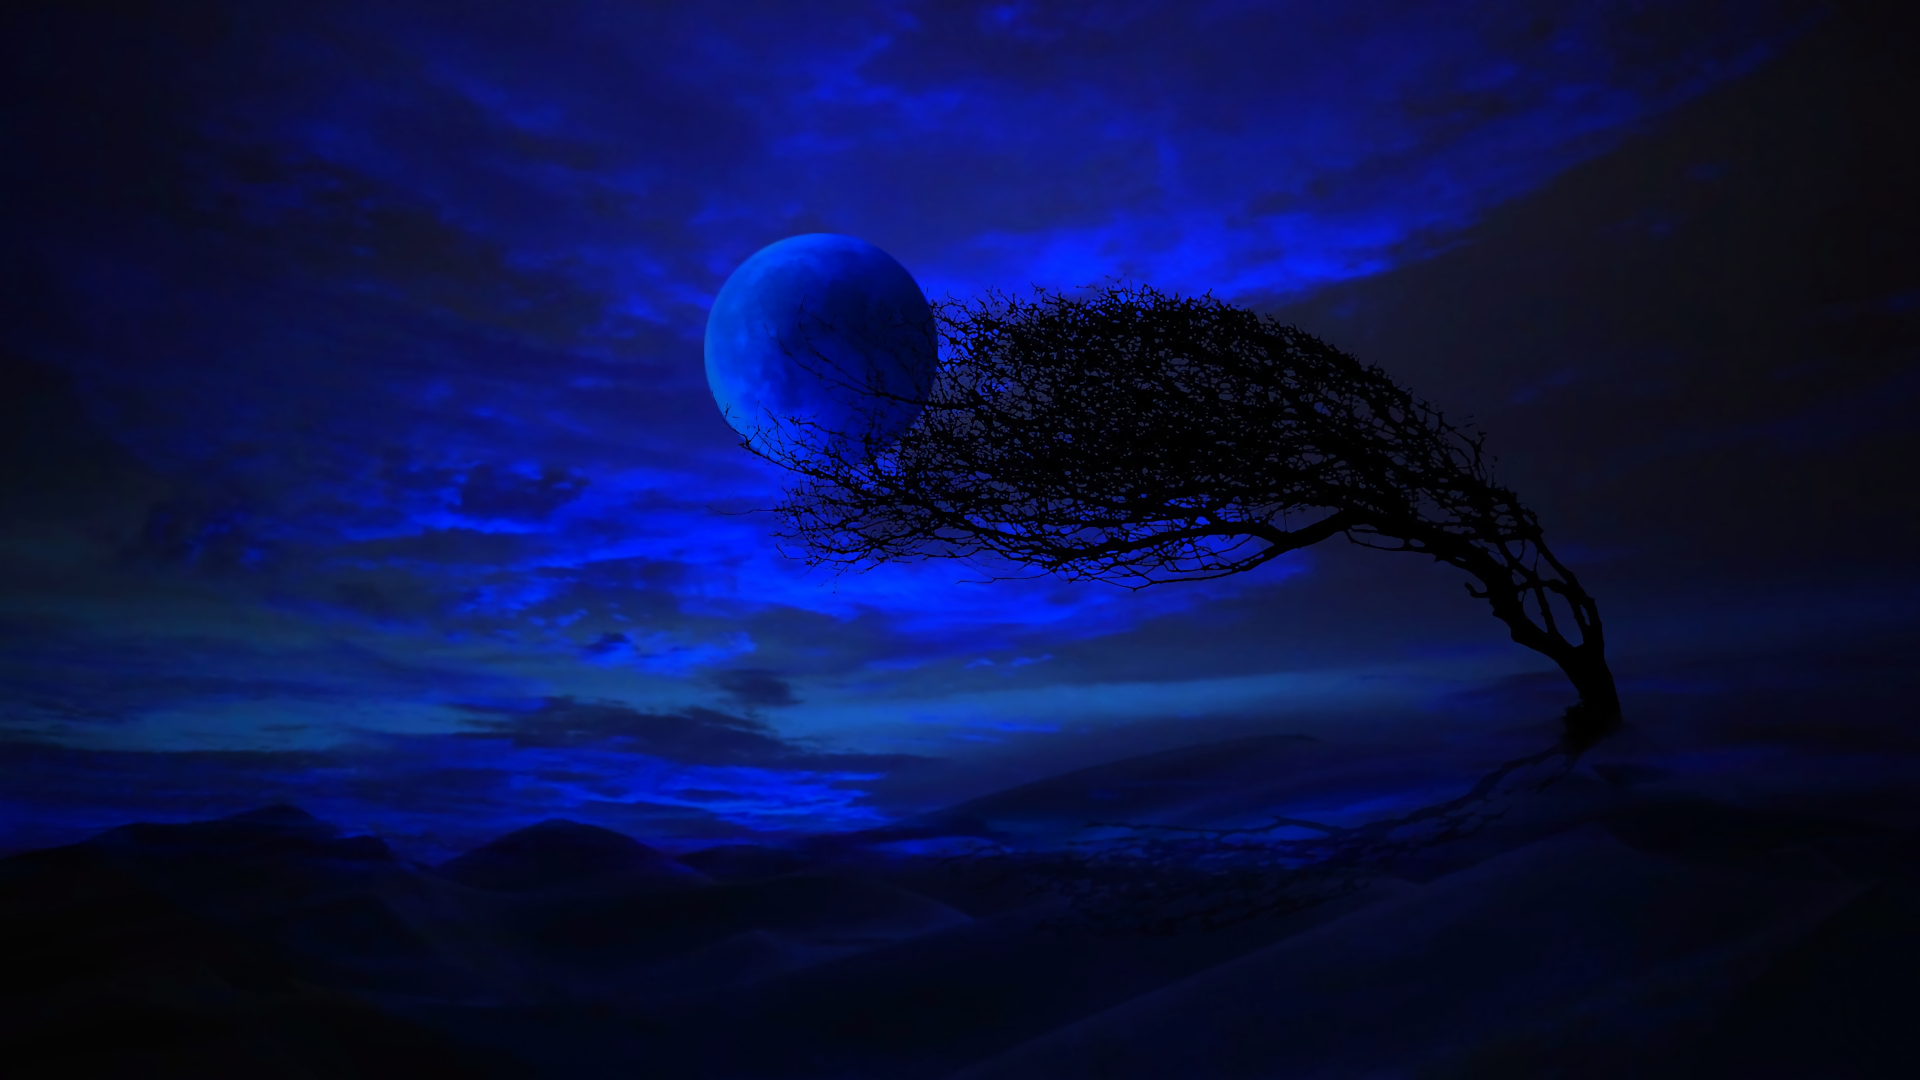 Khám phá đẳng cấp của sự mê hoặc với hình ảnh Blue Moon Night đầy bí ẩn và cuốn hút. Với tông xanh ngọc kết hợp ánh sáng lấp lánh của trăng, hình nền này sẽ giúp bạn thư giãn, tận hưởng những khoảnh khắc thanh thản trên màn hình điện thoại.